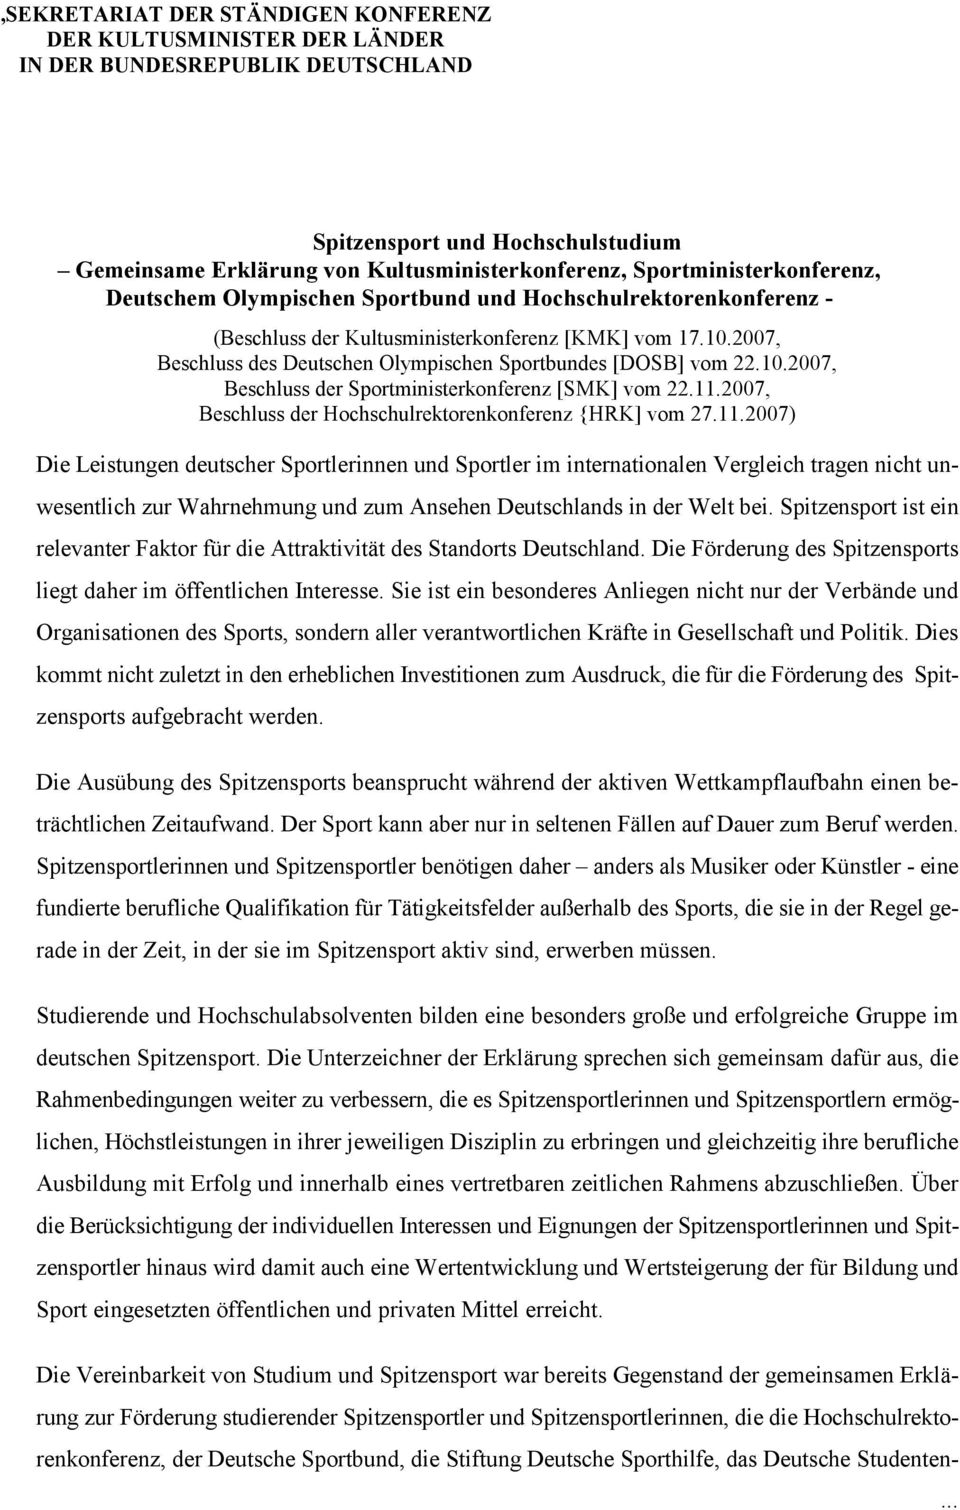 2007, Beschluss des Deutschen Olympischen Sportbundes [DOSB] vom 22.10.2007, Beschluss der Sportministerkonferenz [SMK] vom 22.11.